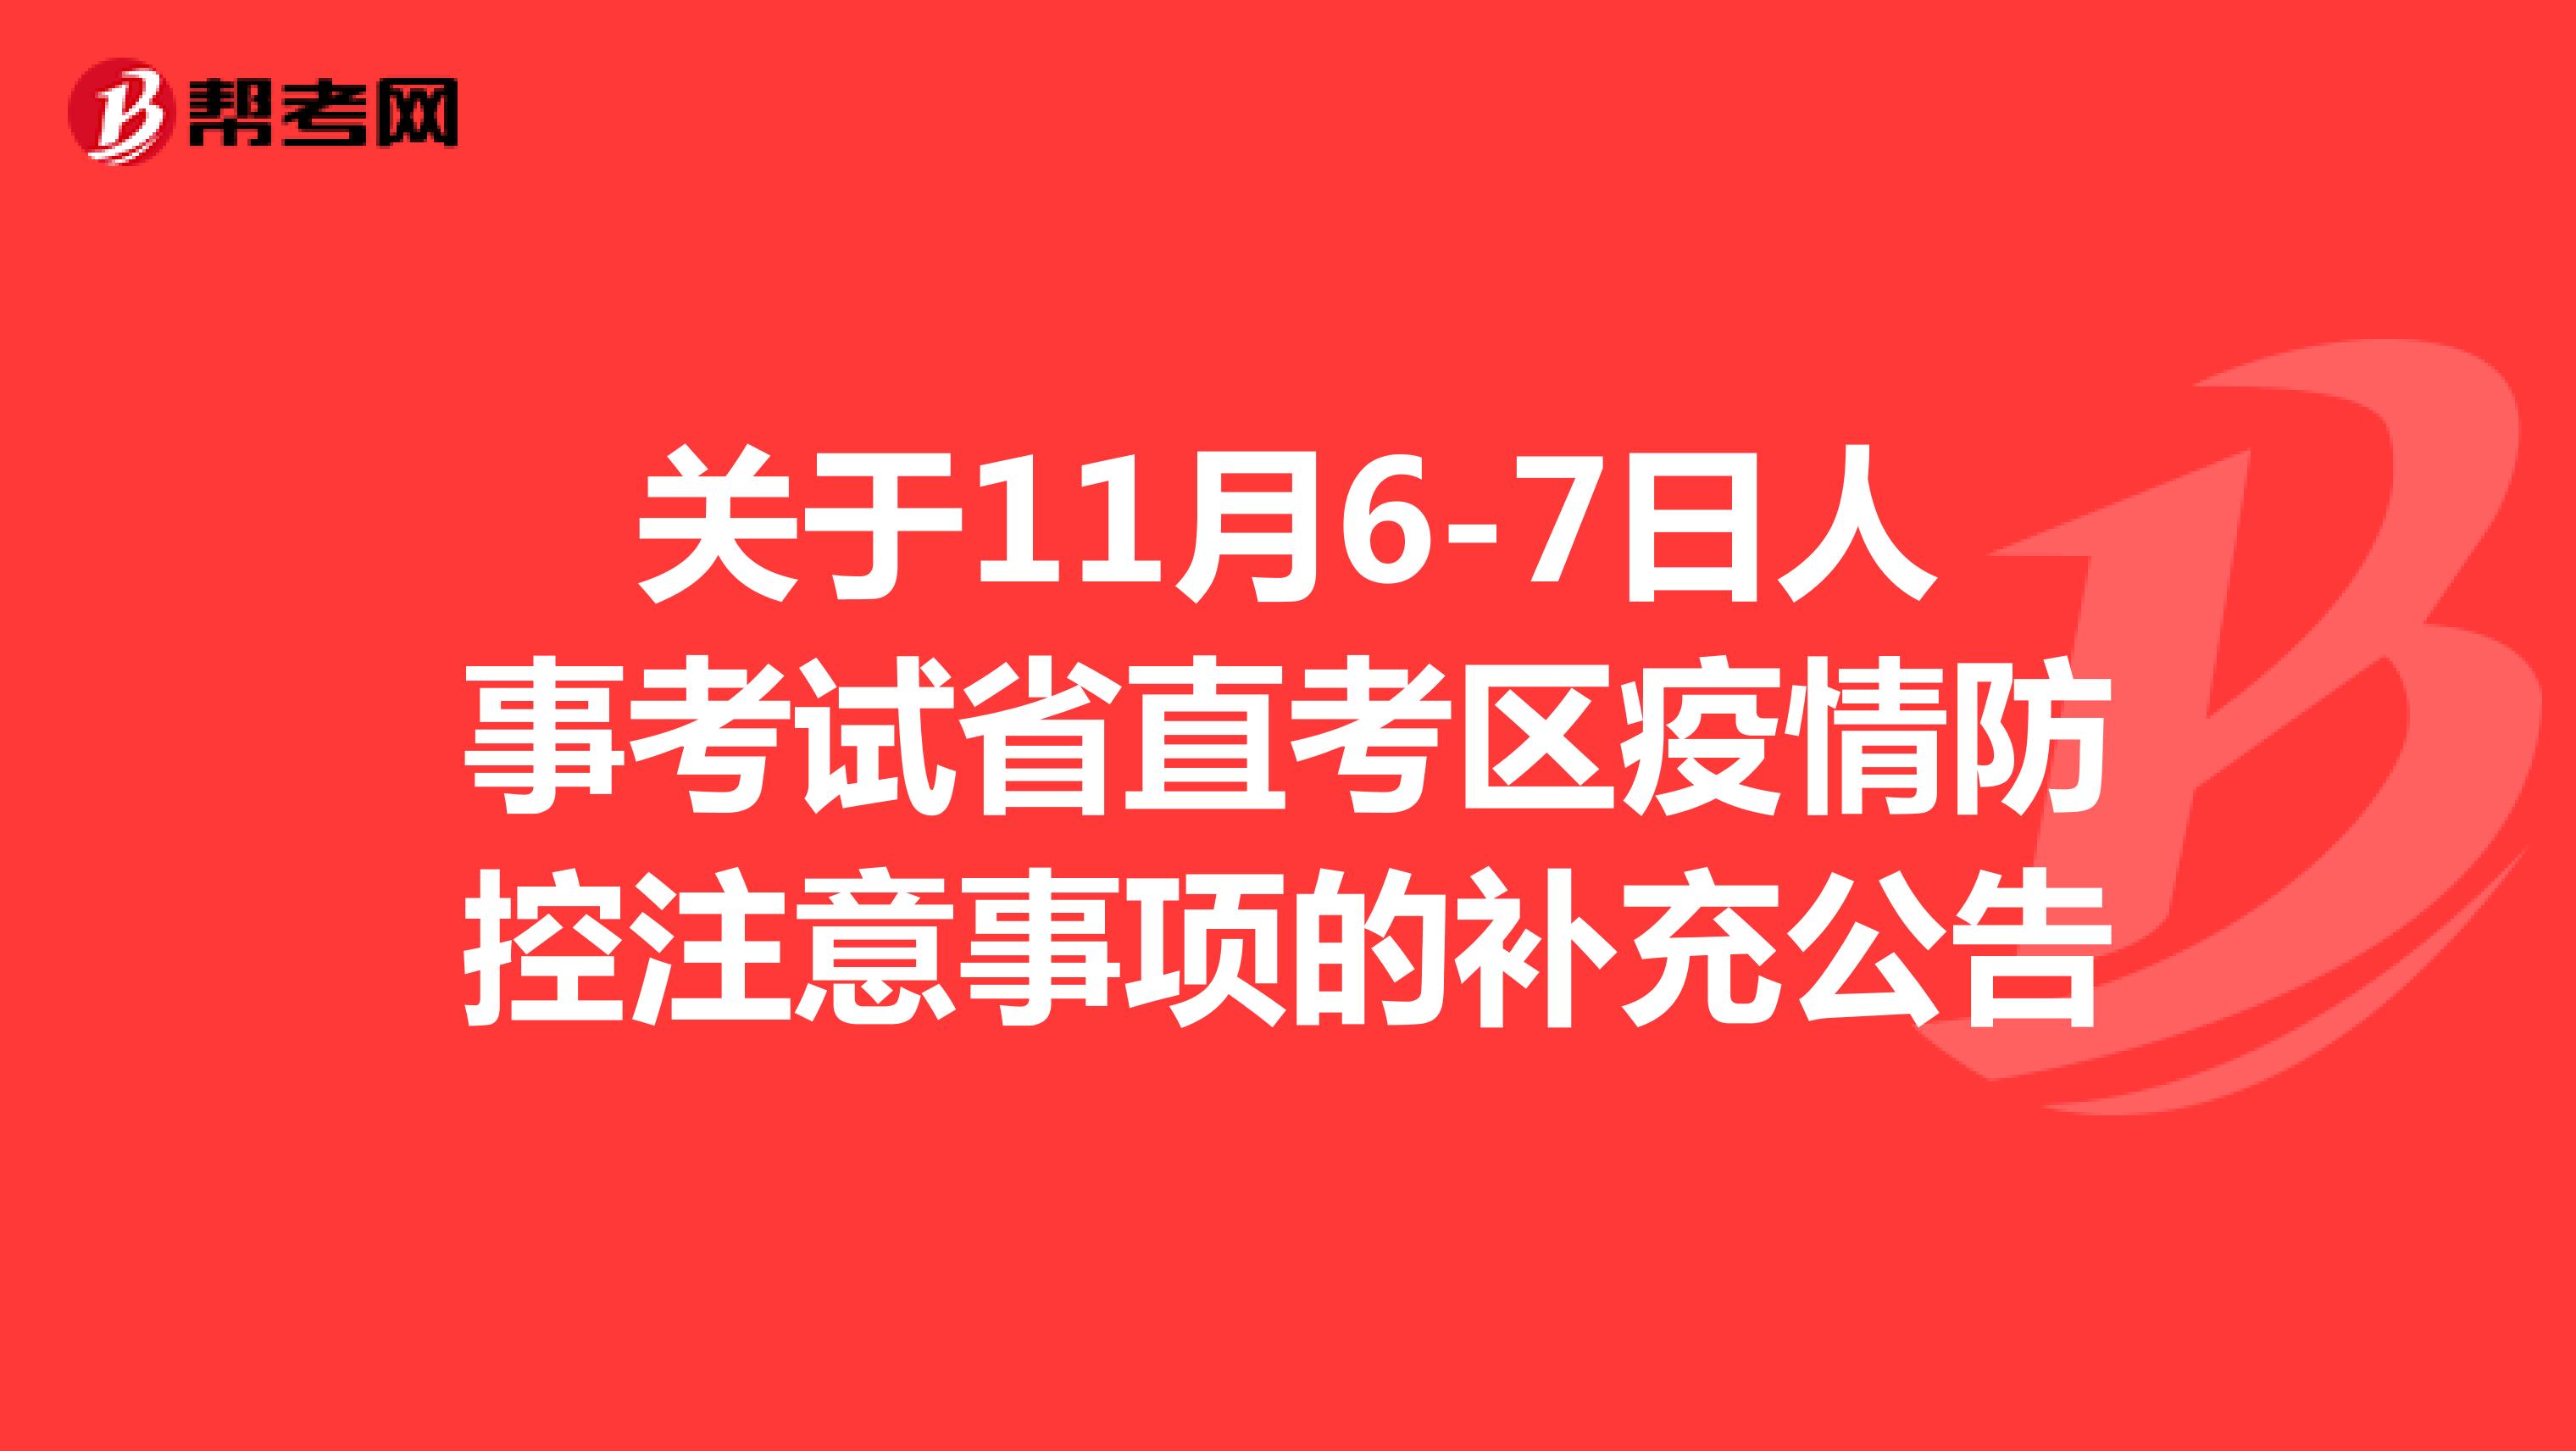 关于四川省11月6-7日人事考试省直考区疫情防控注意事项的补充公告